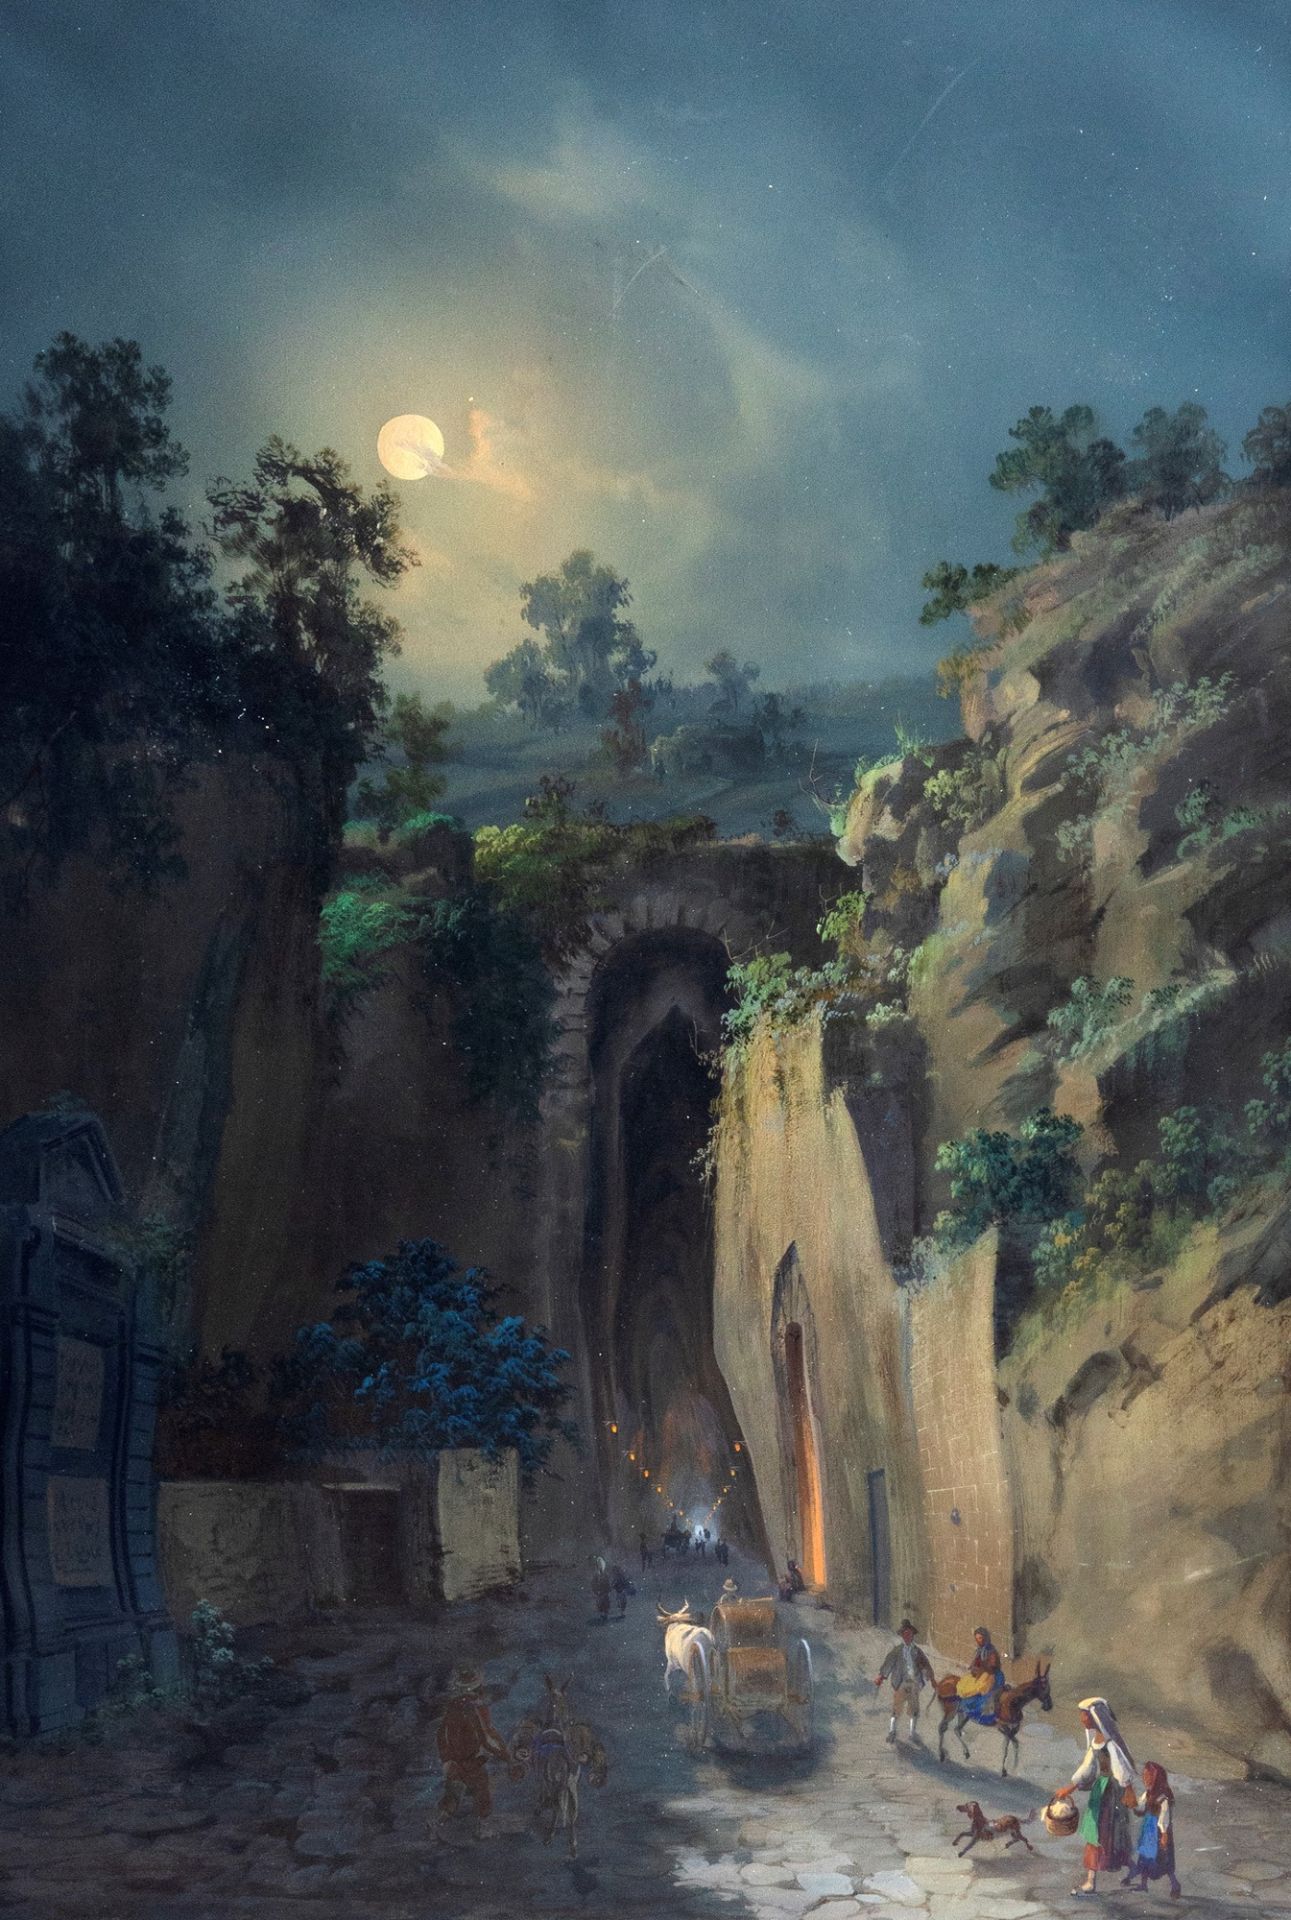 Gioacchino La Pira (active between 1839 and 1875) - Posillipo cave, circa 1868